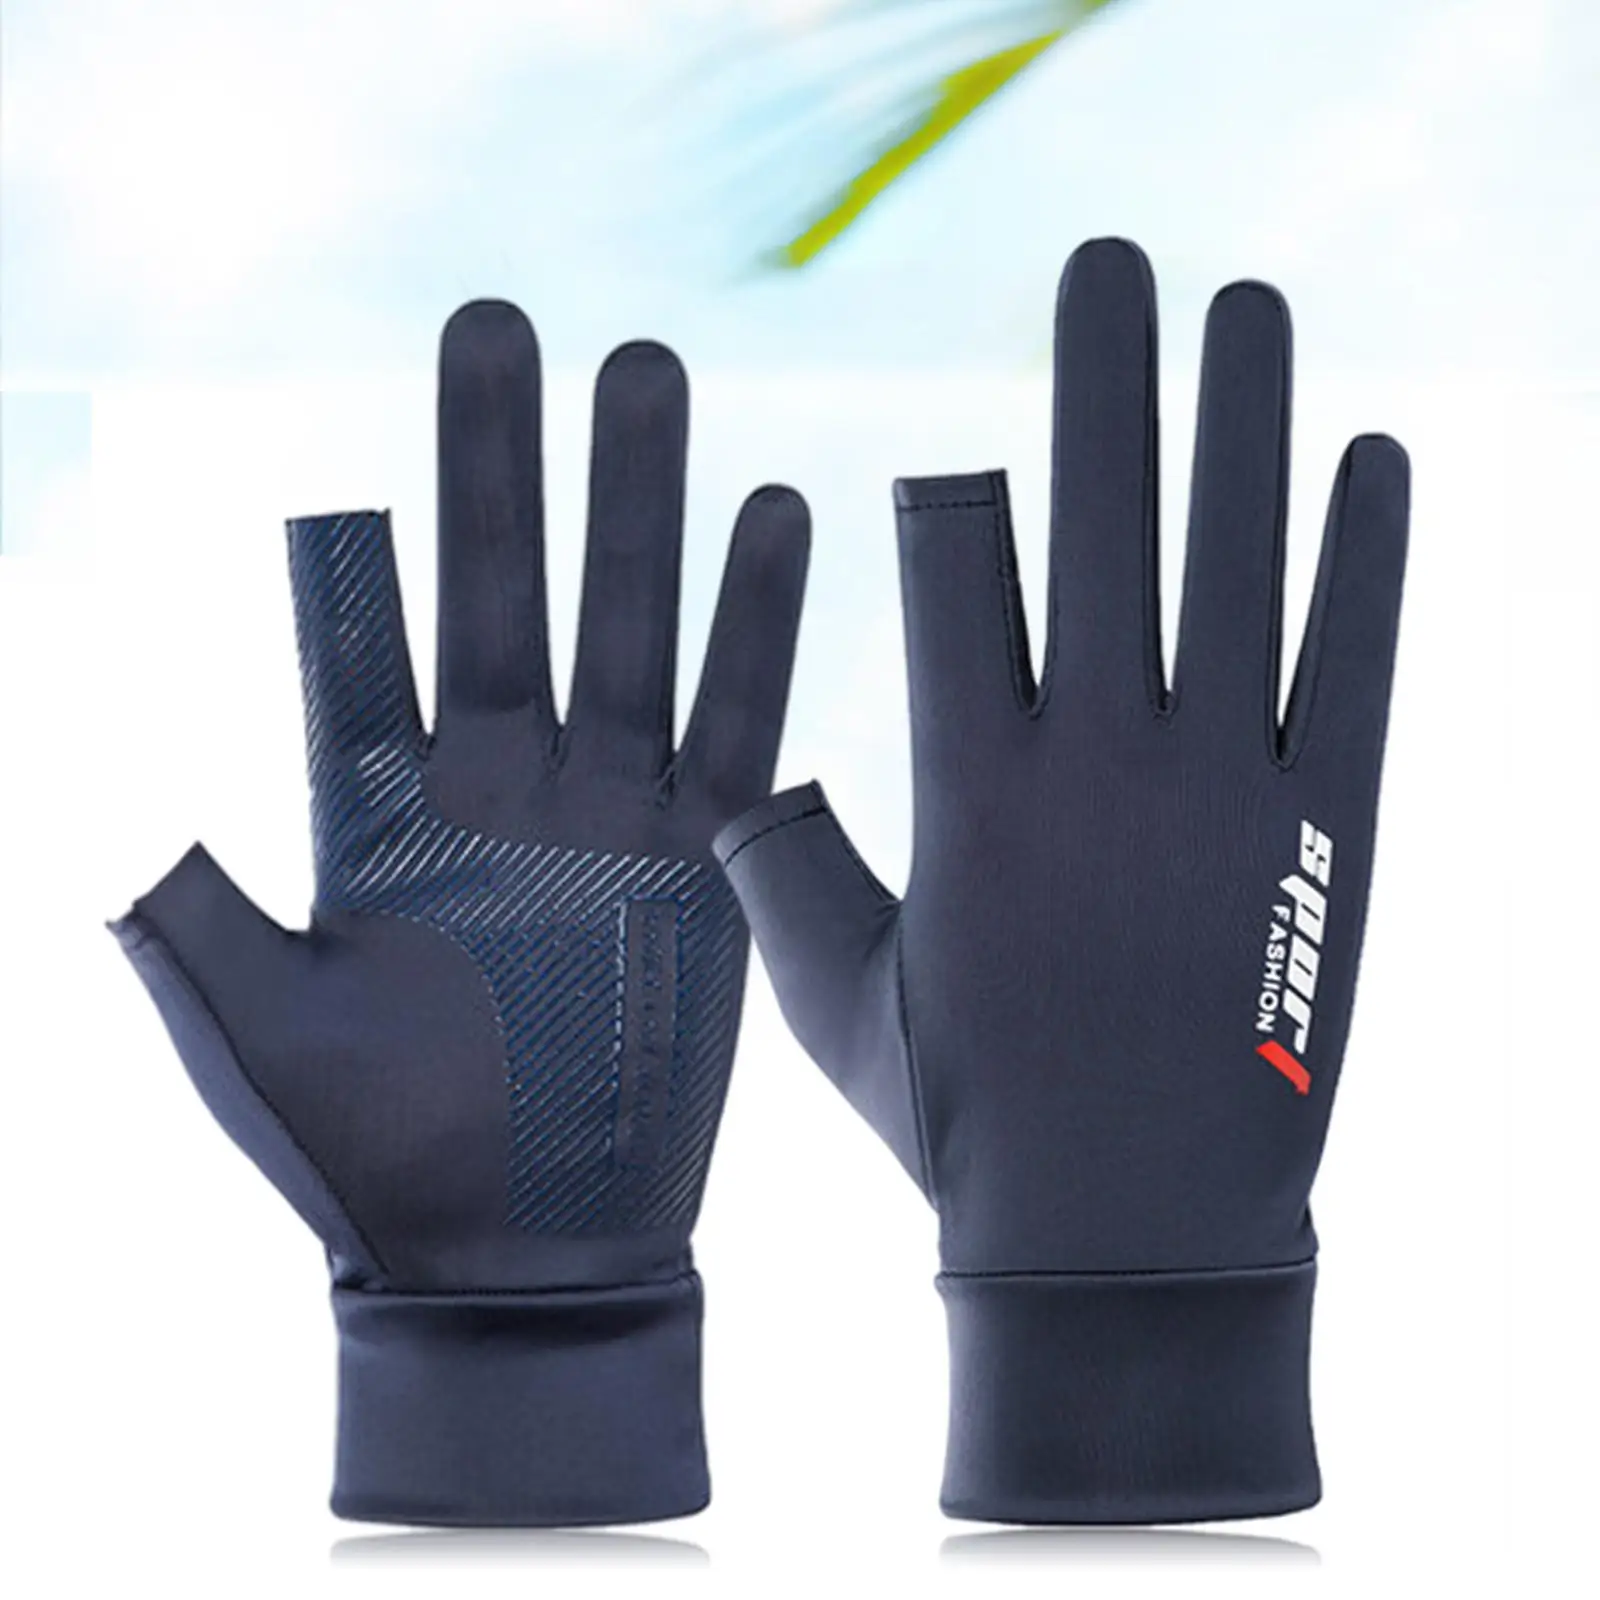 2  Bike Gloves Cycling Gloves  Full Finger Half Finger  Non- Protective for 